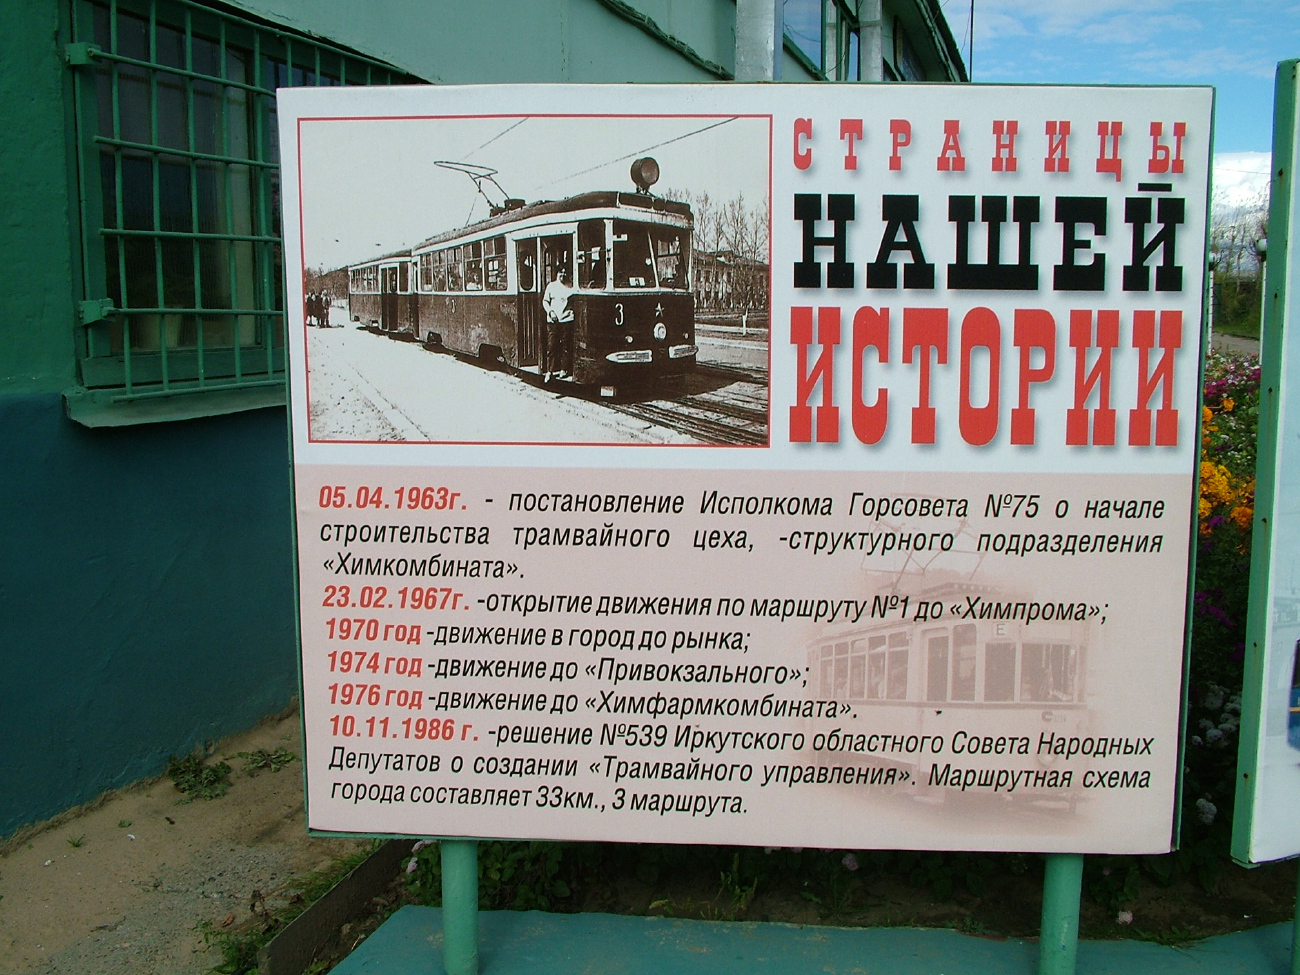 Usolye-Siberian — Tramway Depot; Usolye-Siberian — Tramway History